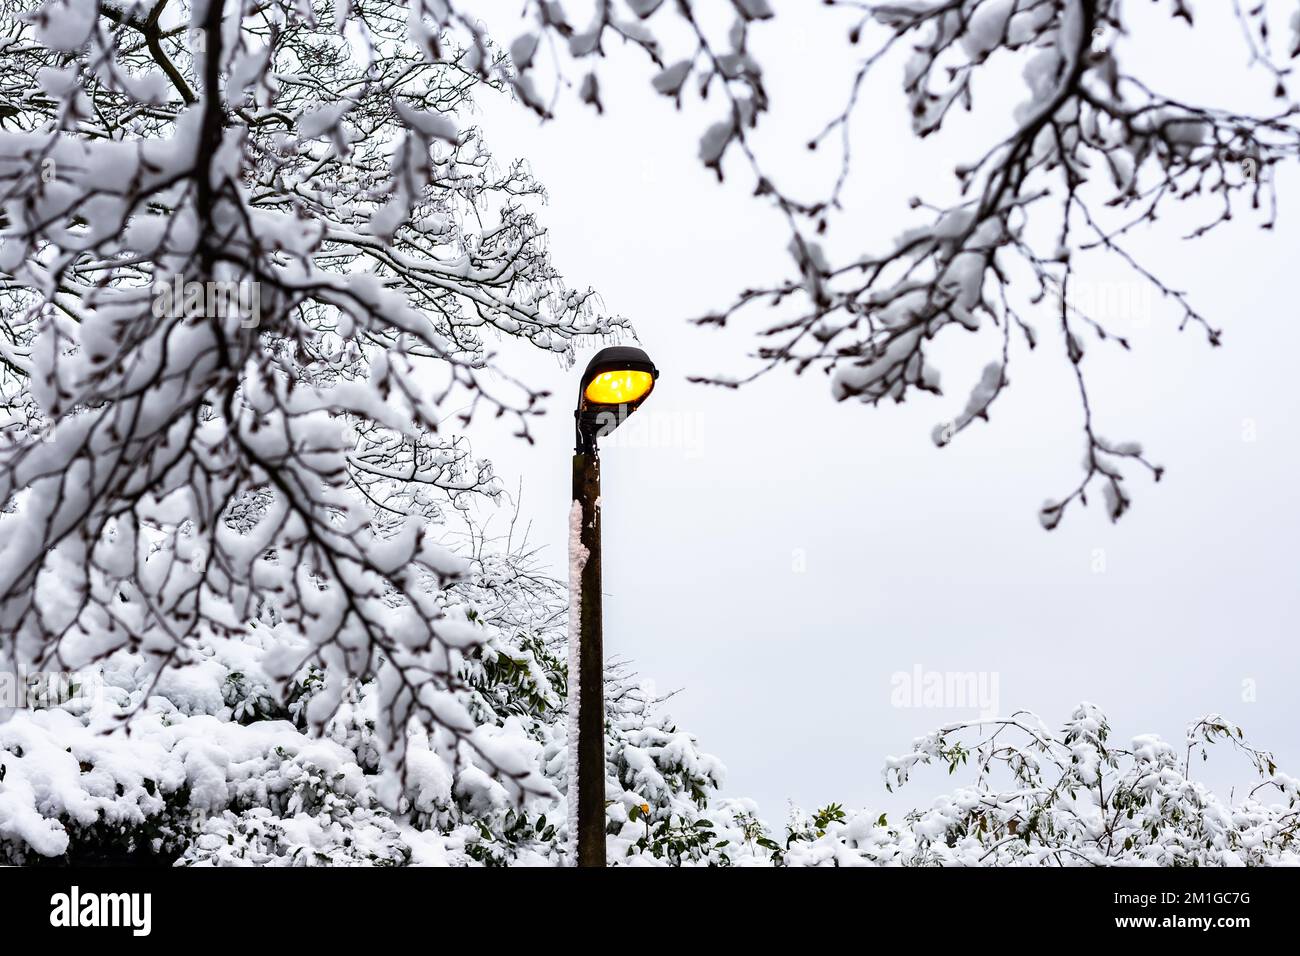 Una luce stradale coperta di neve e una lampada standard si illumina di giallo contro un grigio e miserabile inverno Sky.Trees laiden con la neve agiscono come una cornice per l'immagine Foto Stock